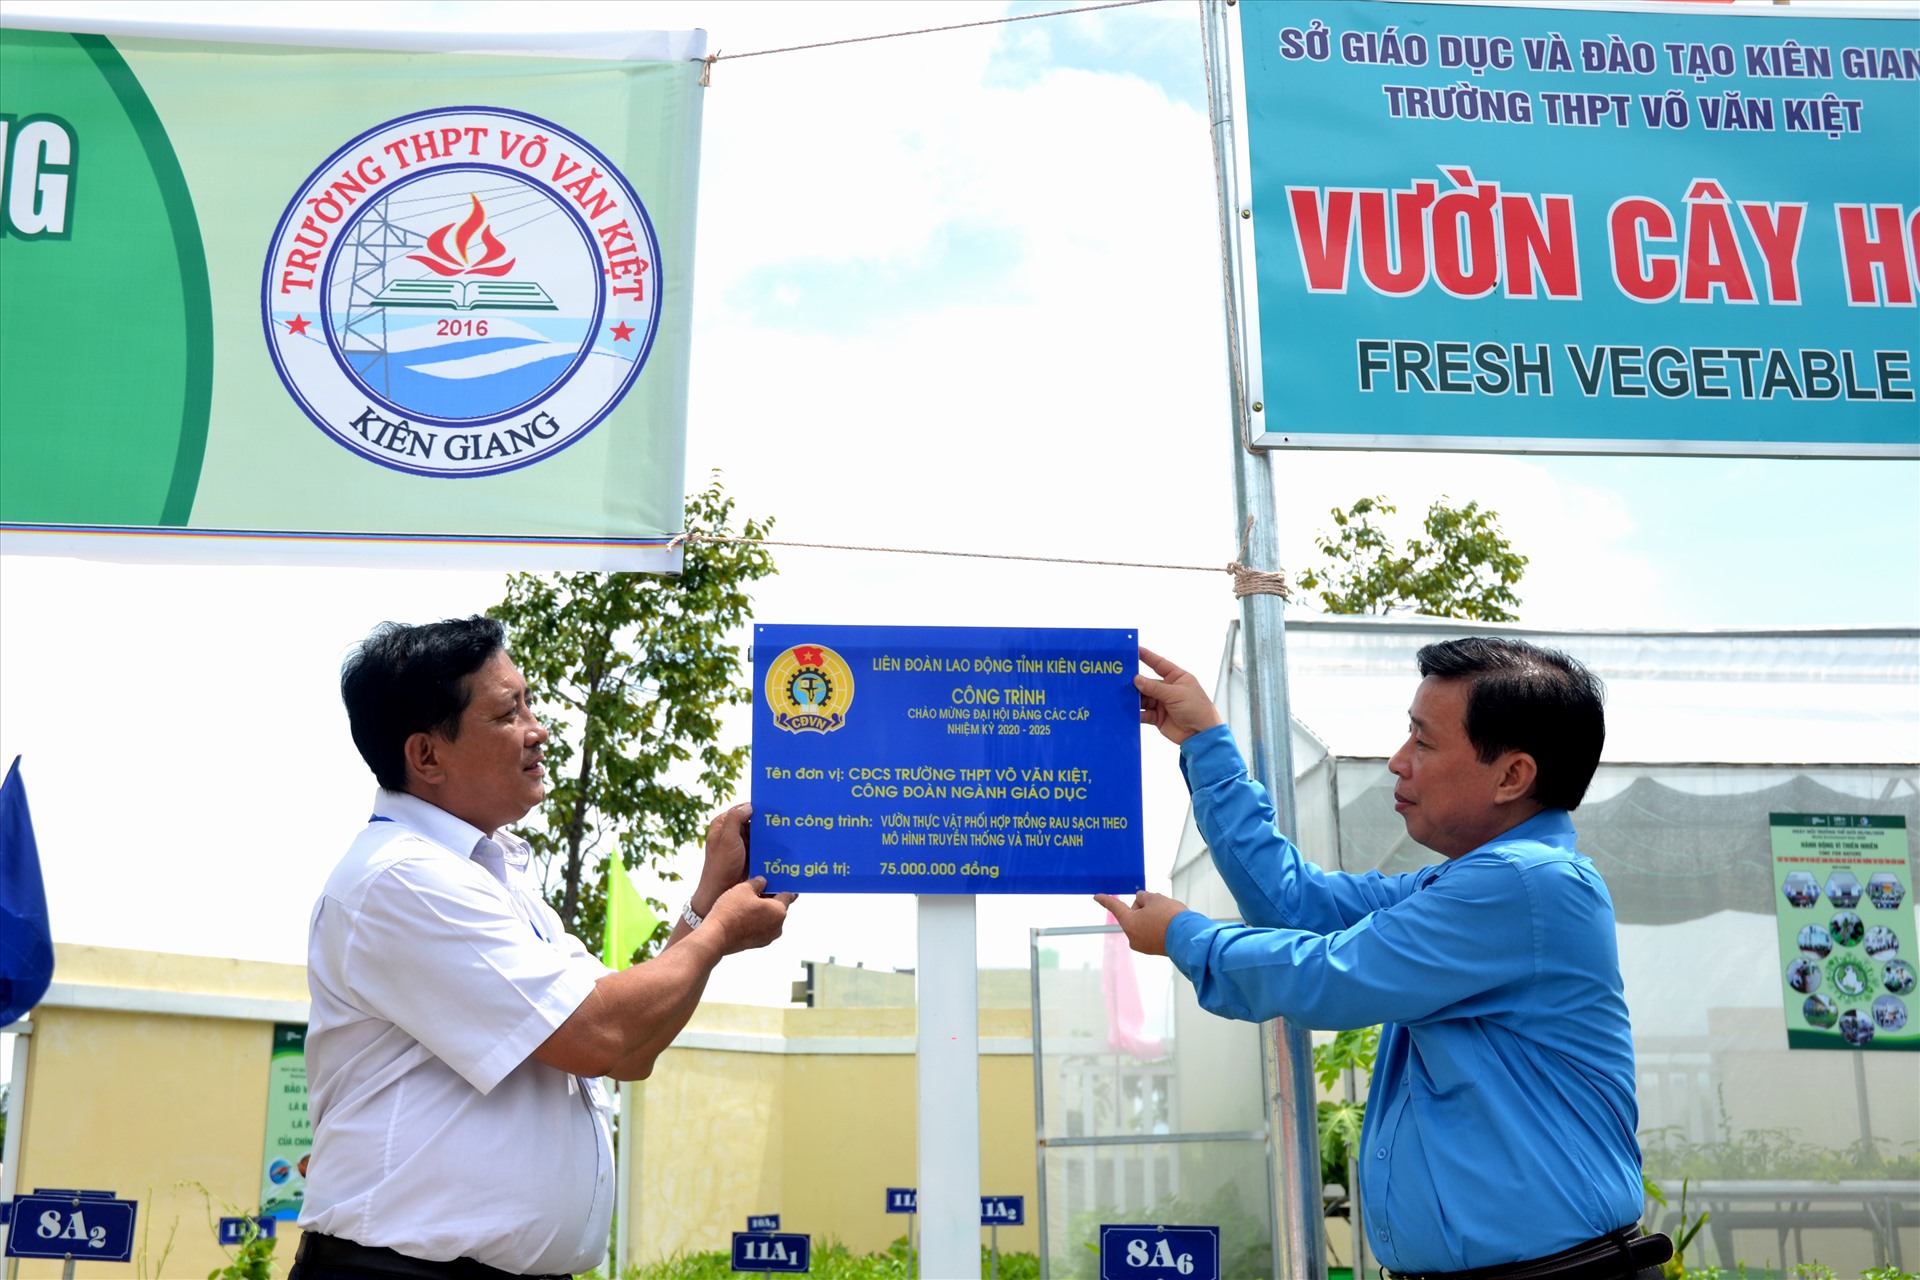 Gắn biển công nhận công trình CĐCS Trường THPT Võ Văn Kiệt. Ảnh: LT